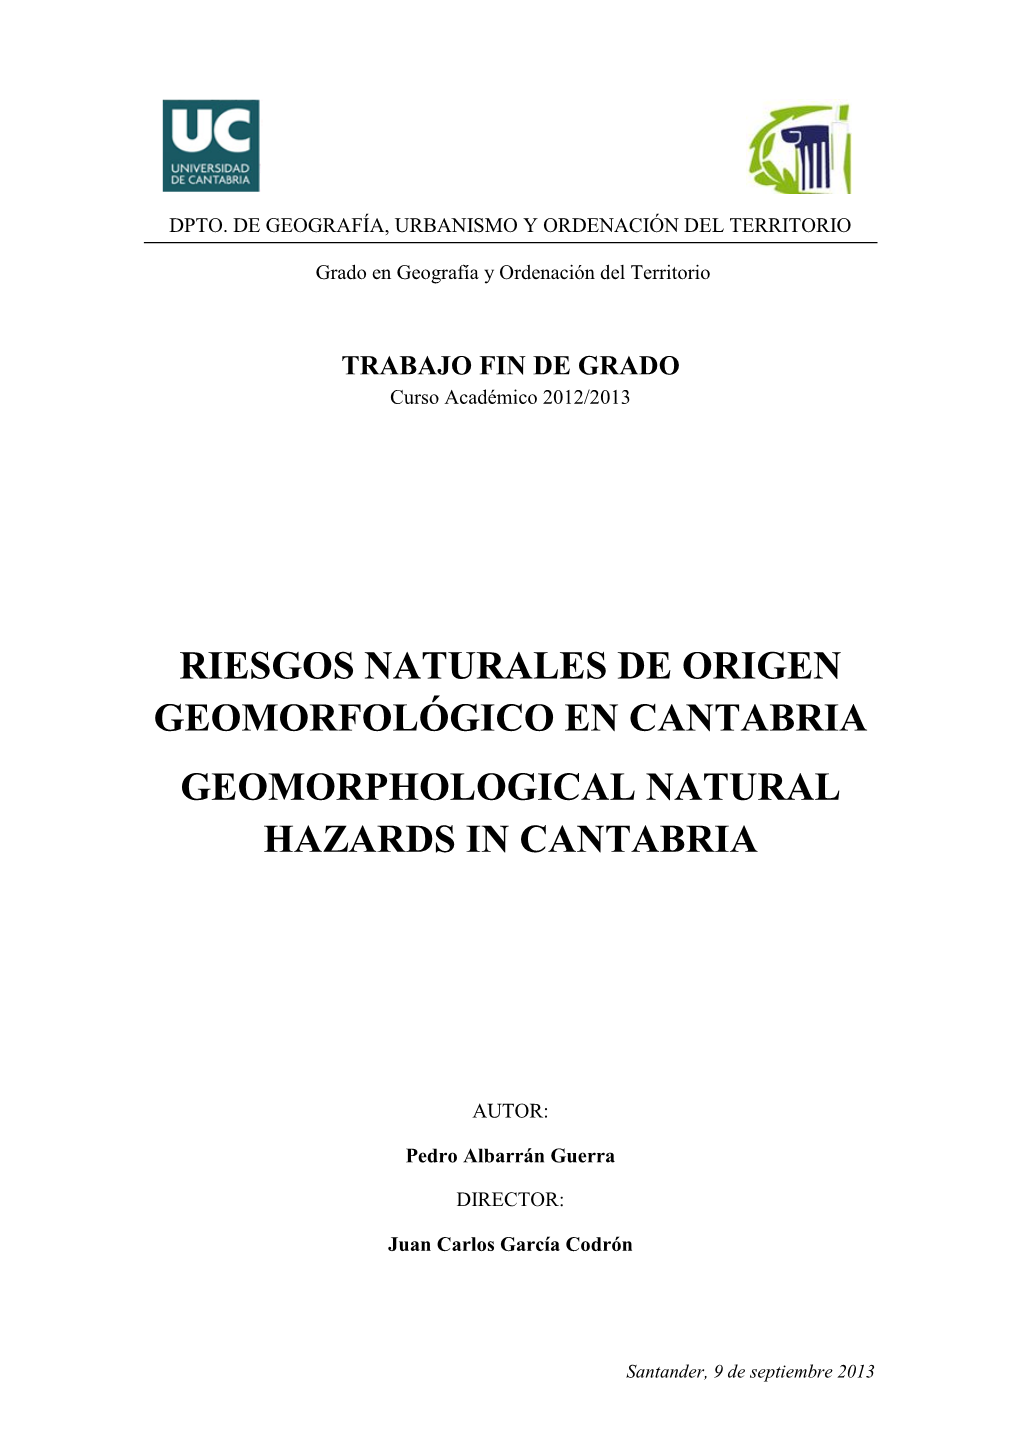 Riesgos Naturales De Origen Geomorfológico En Cantabria Geomorphological Natural Hazards in Cantabria